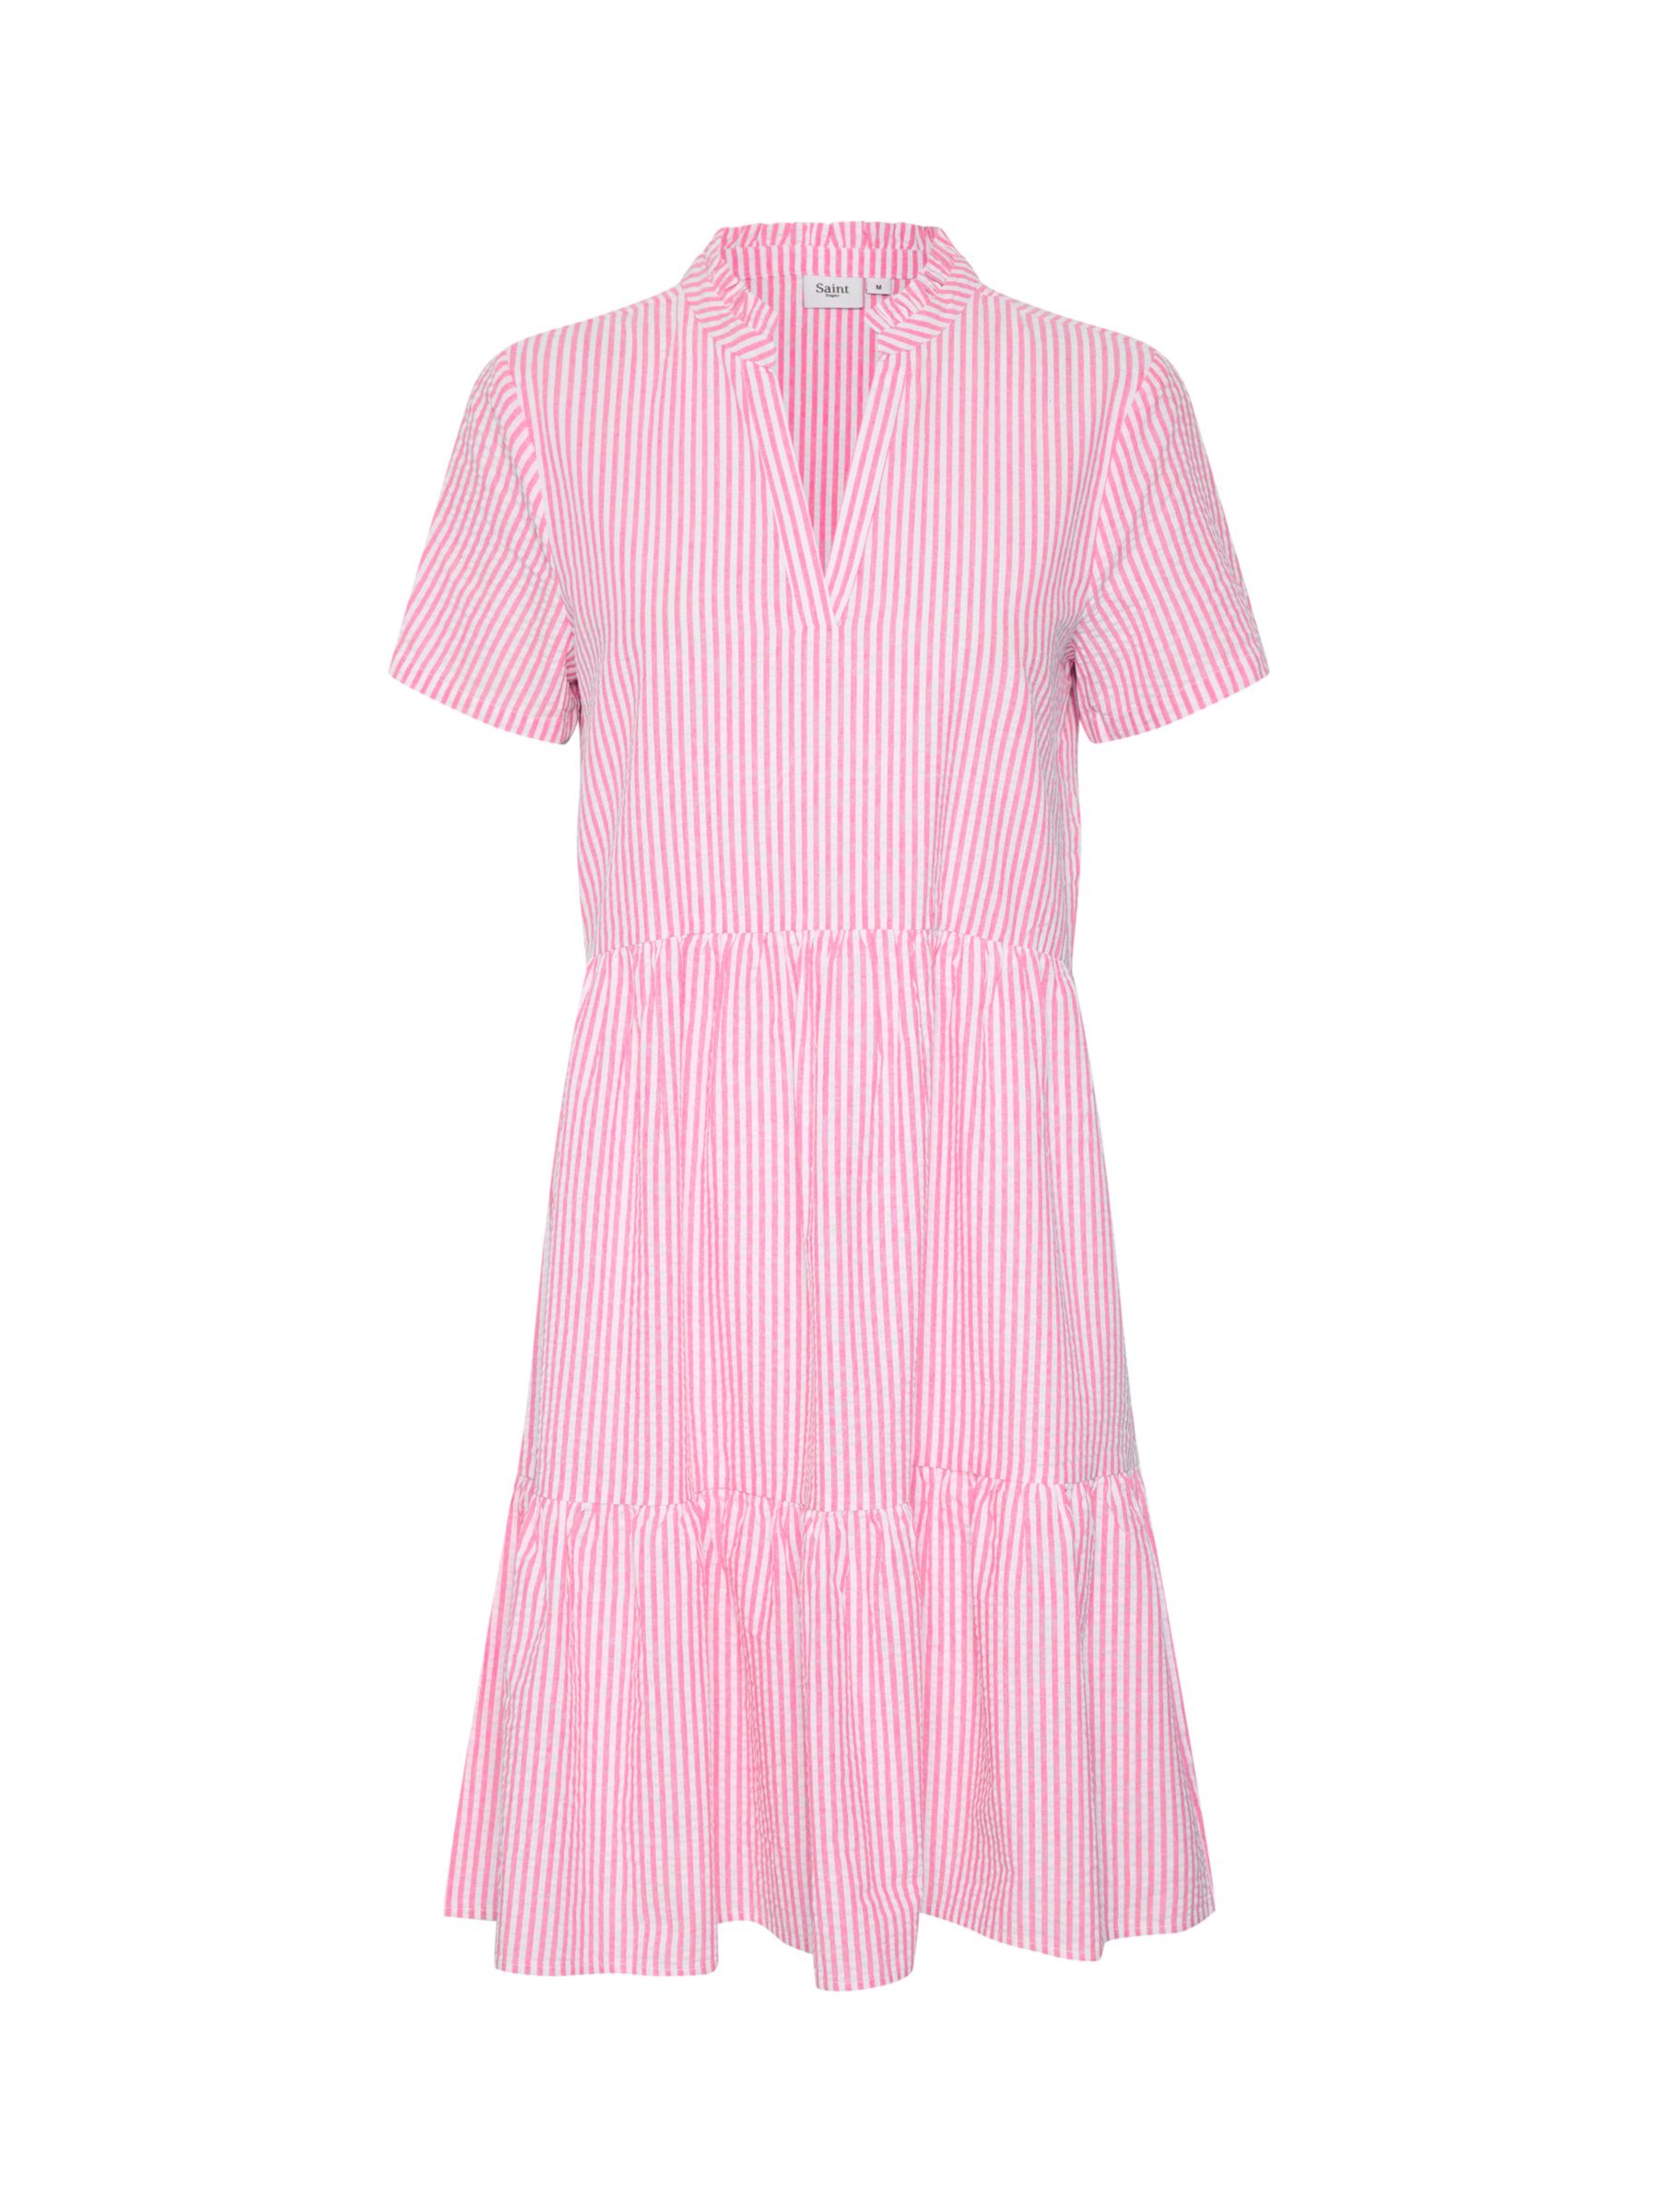 Buy Saint Tropez Elmiko Striped Cotton Tiered Dress Online at johnlewis.com